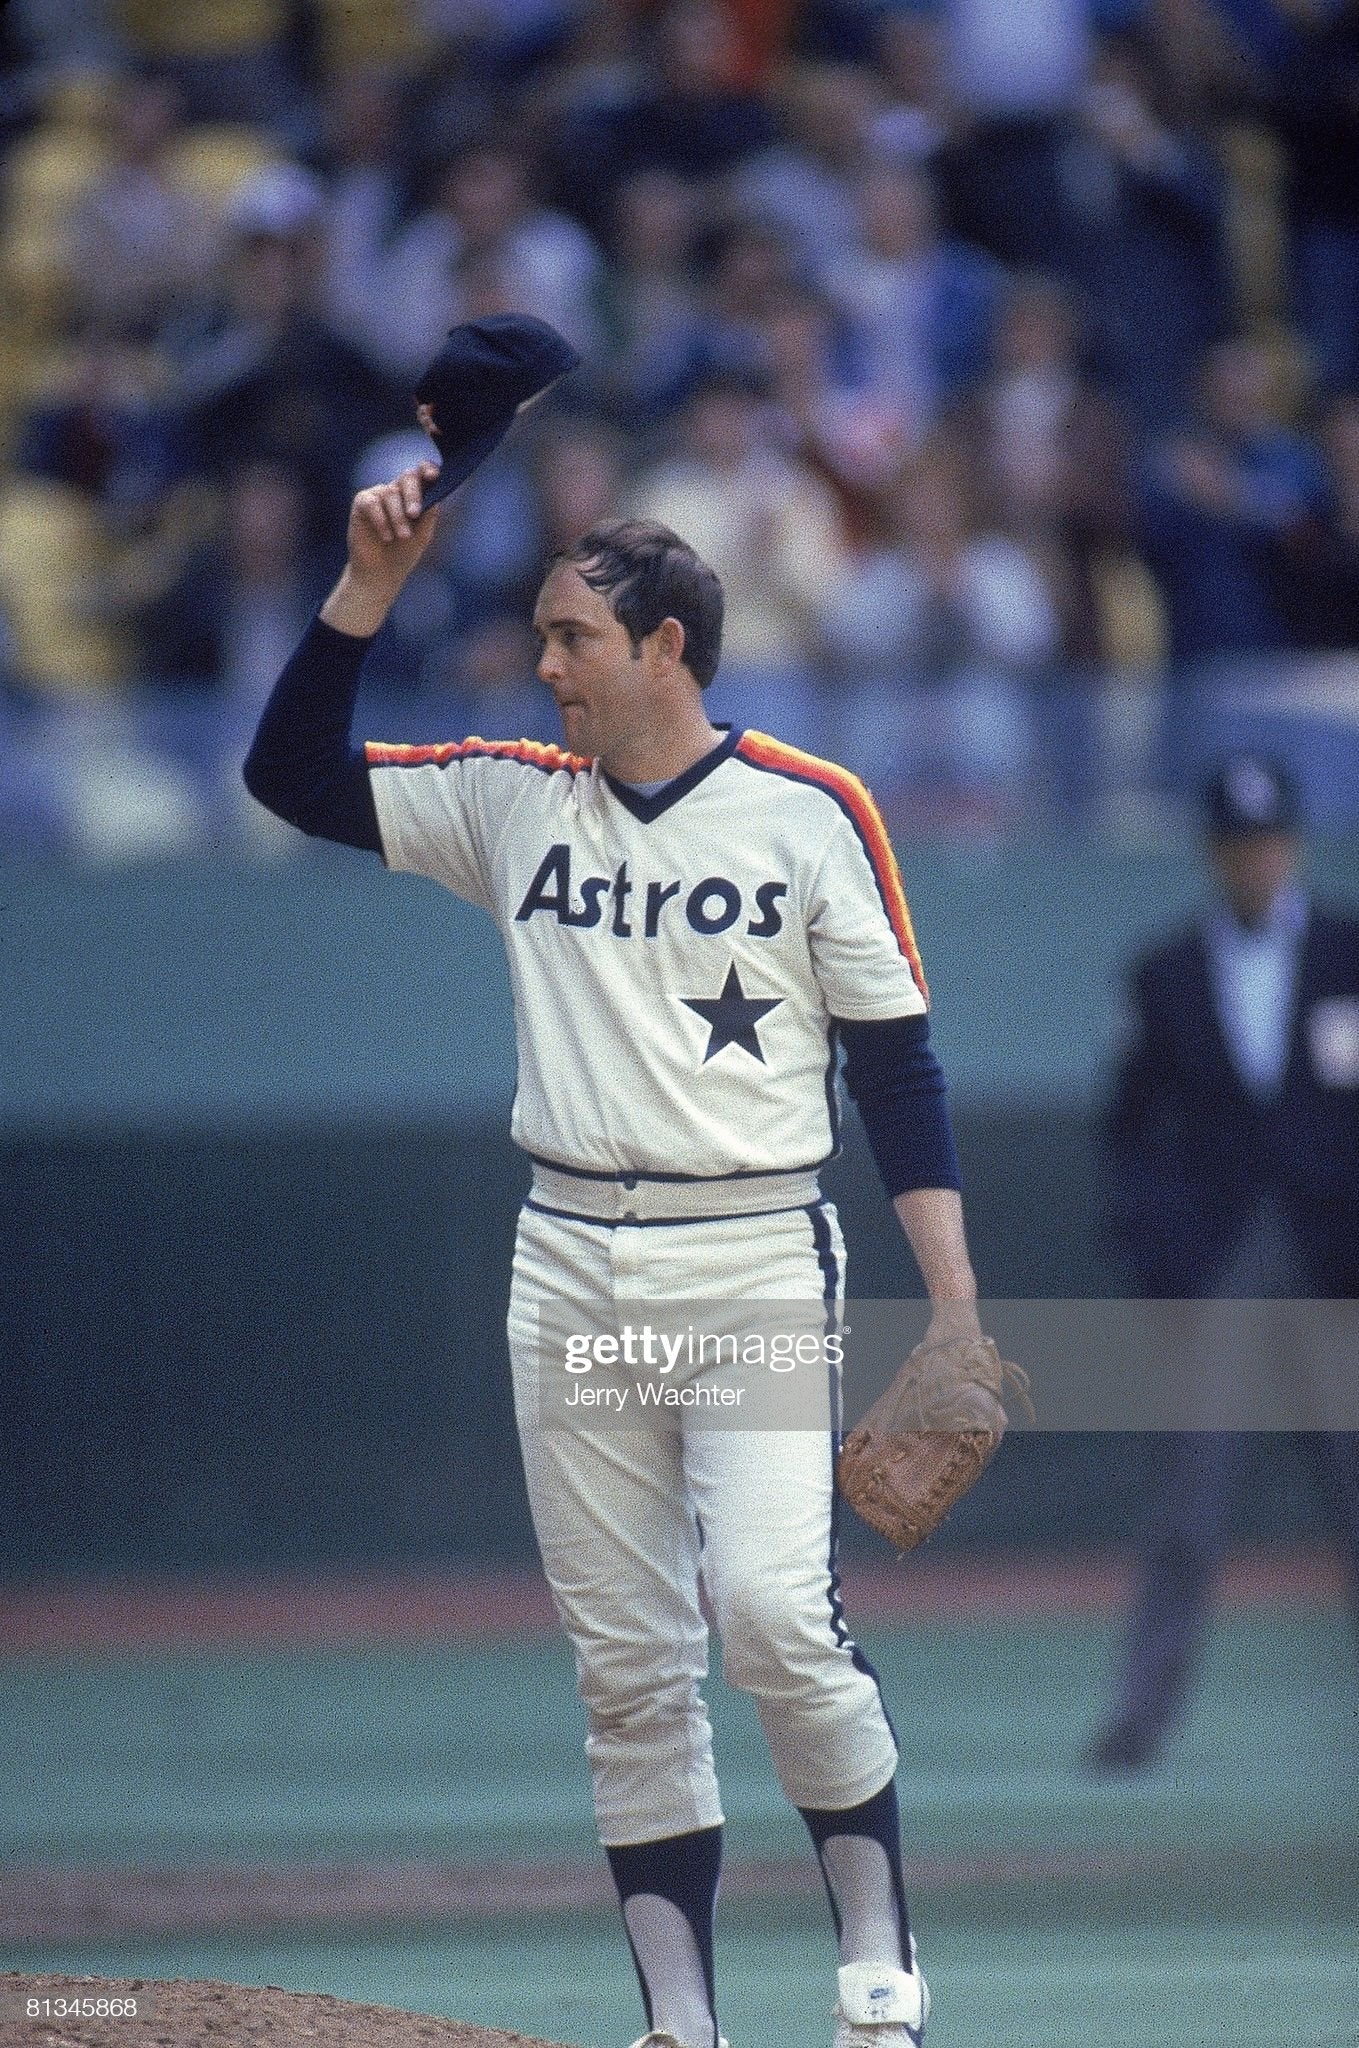 Vtg 80's Sand Knit Houston Astros Blue Baseball Jersey 